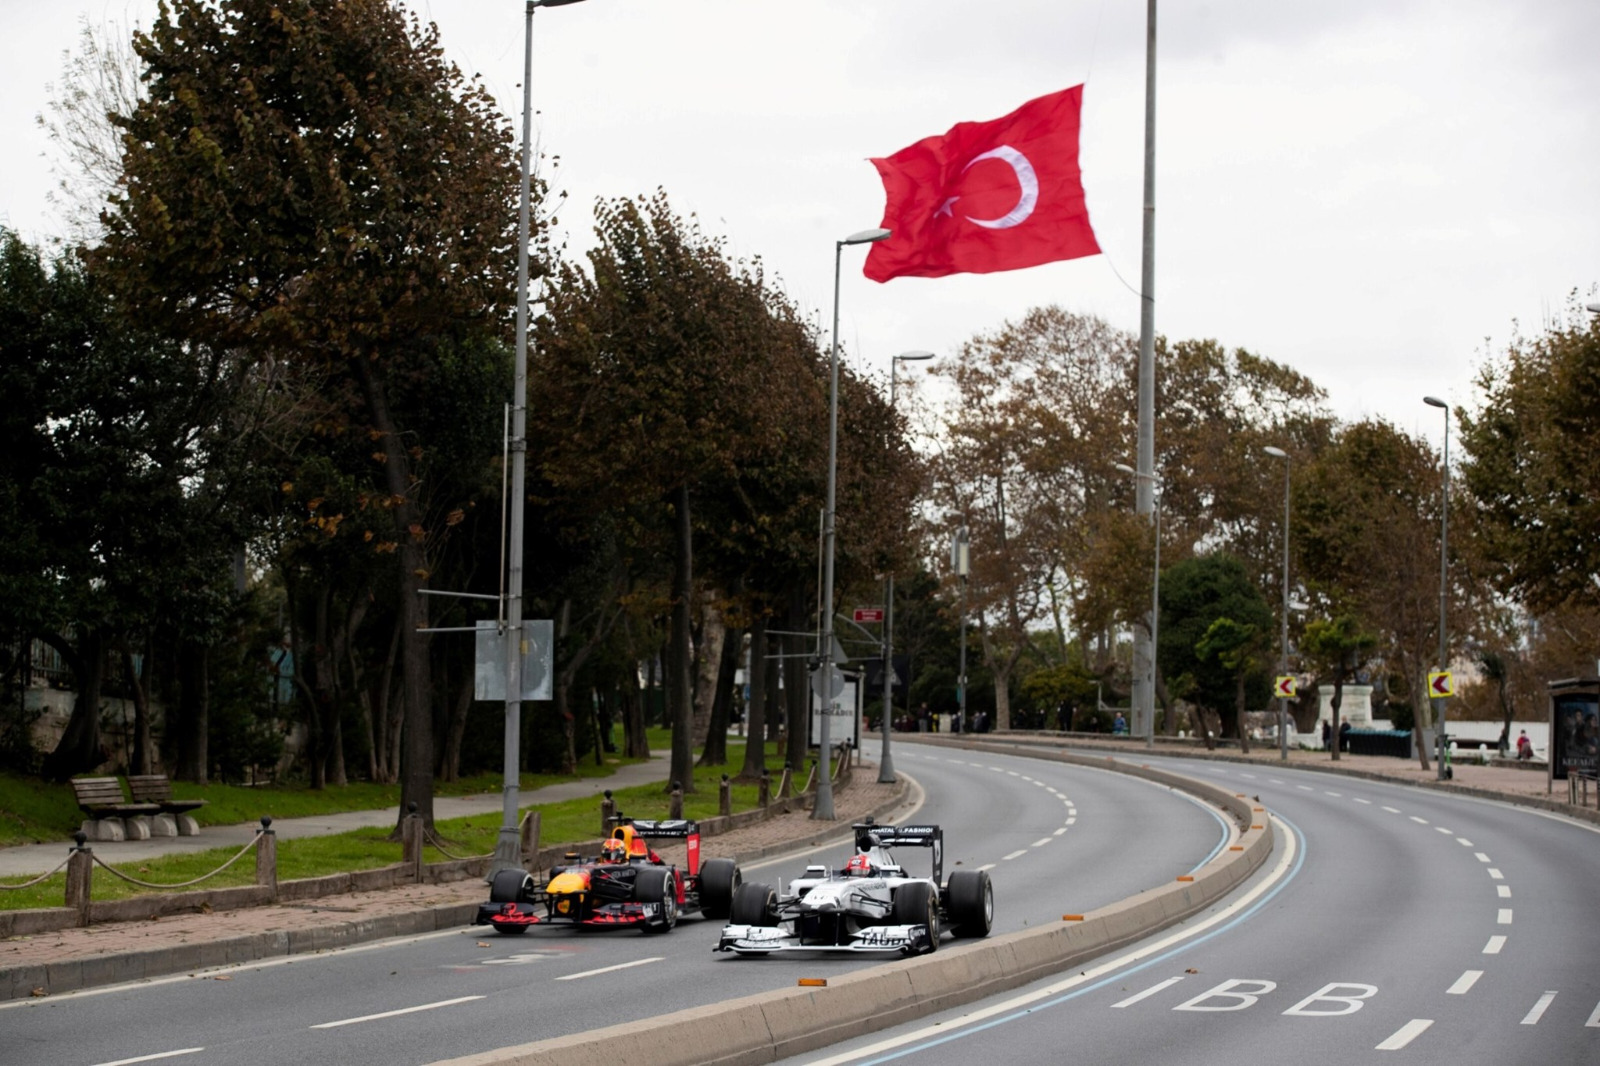 بلدية تورهال التركية في طوقات تمتنع عن كنس أوراق الشجر المتساقطة 3 أيام ليستمتع السكان بجمال الخريف